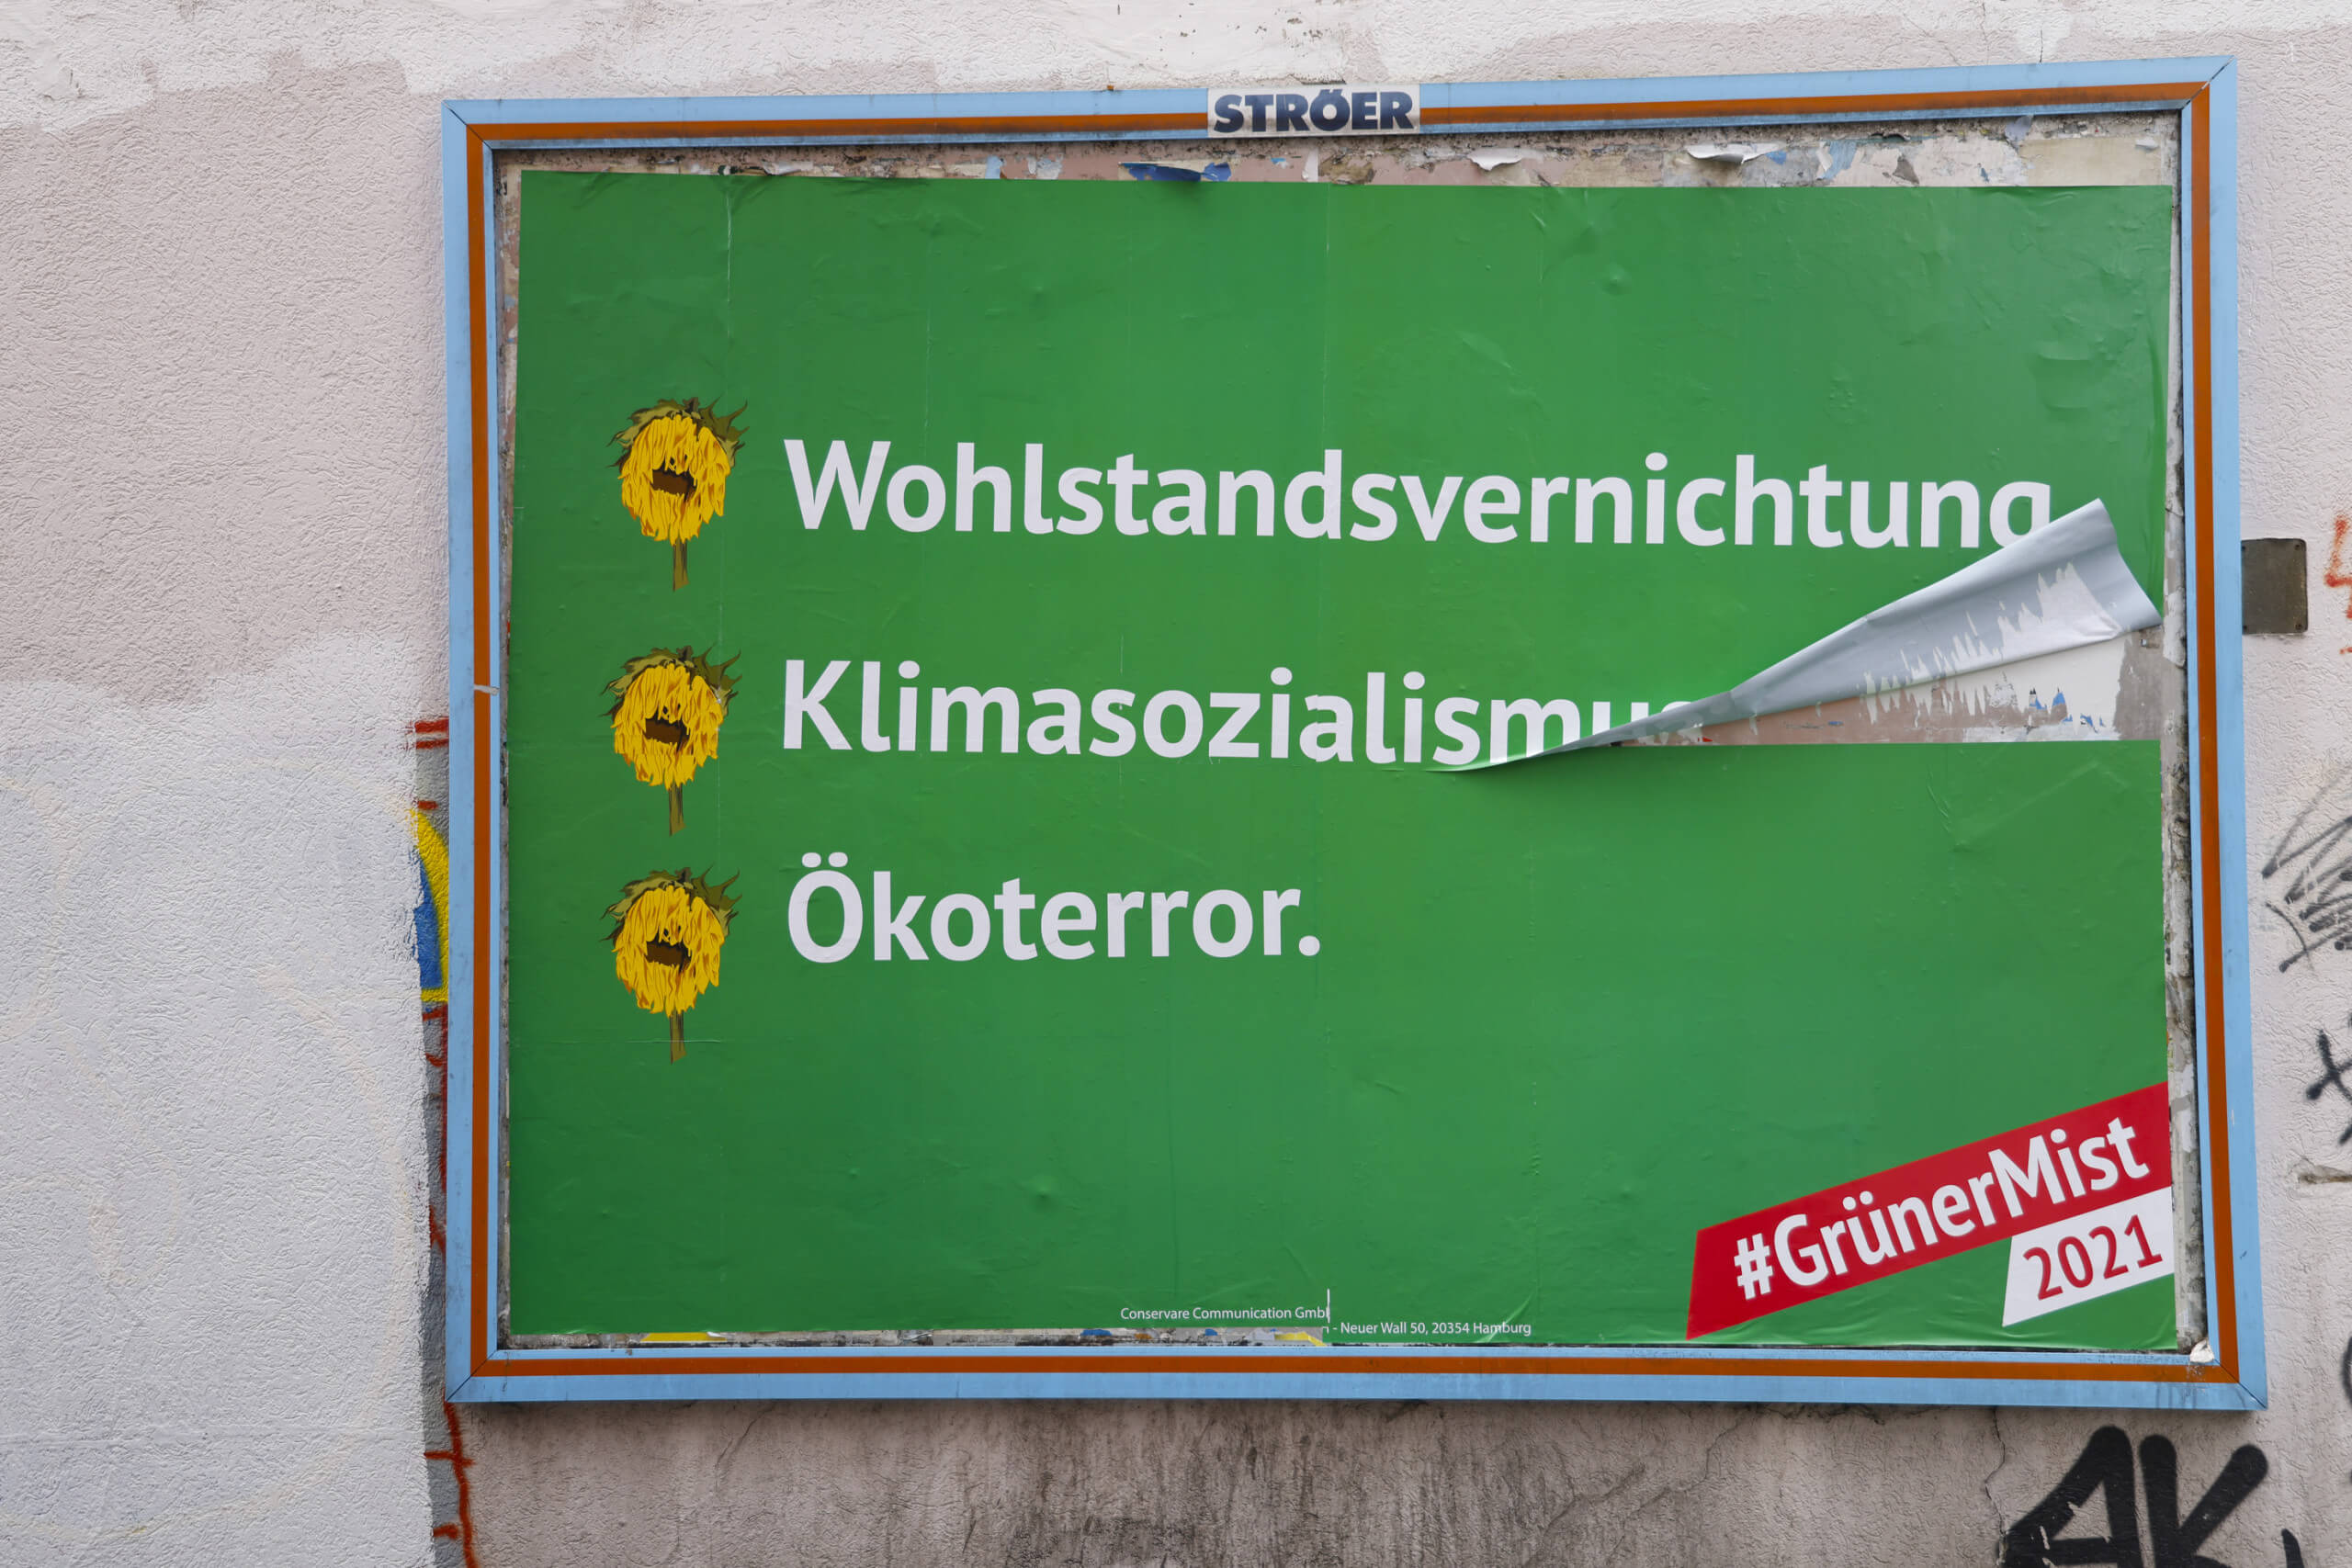 Wie hier in Aachen hängen seit dem 9. August in bundesweit rund 50 Städten Plakate einer Anti-Grünen-Kampagne. Auf dem Plakat steht „Wohlstandsvernichtung“, „Klimasozialismus“ und „Ökoterror“ mit dem Hashtag „Grüner Mist“